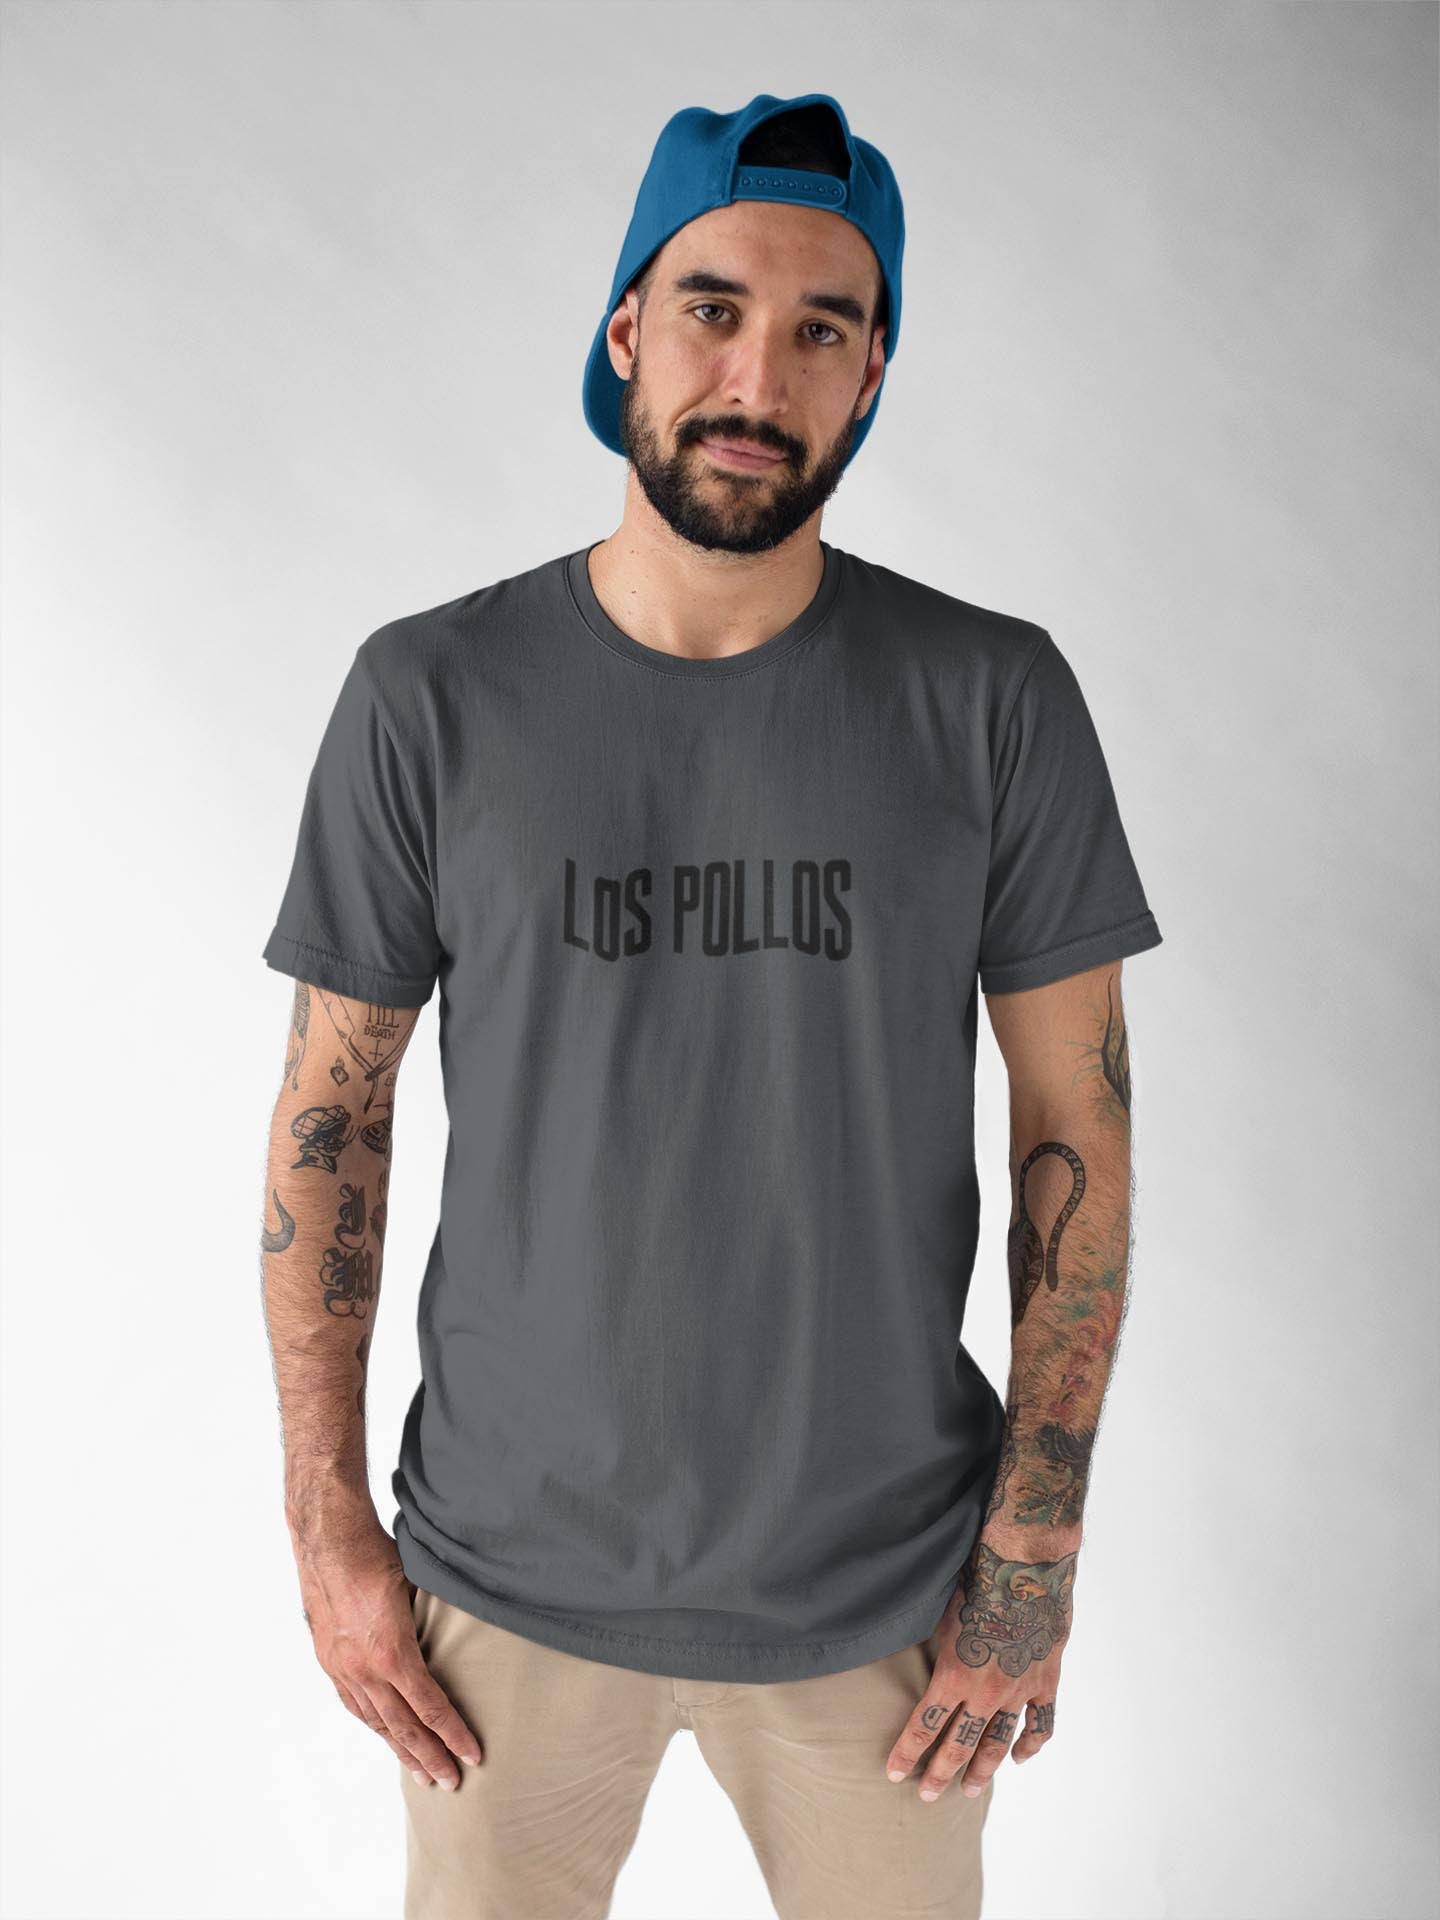 Los Pollos steel grey t shirt for men